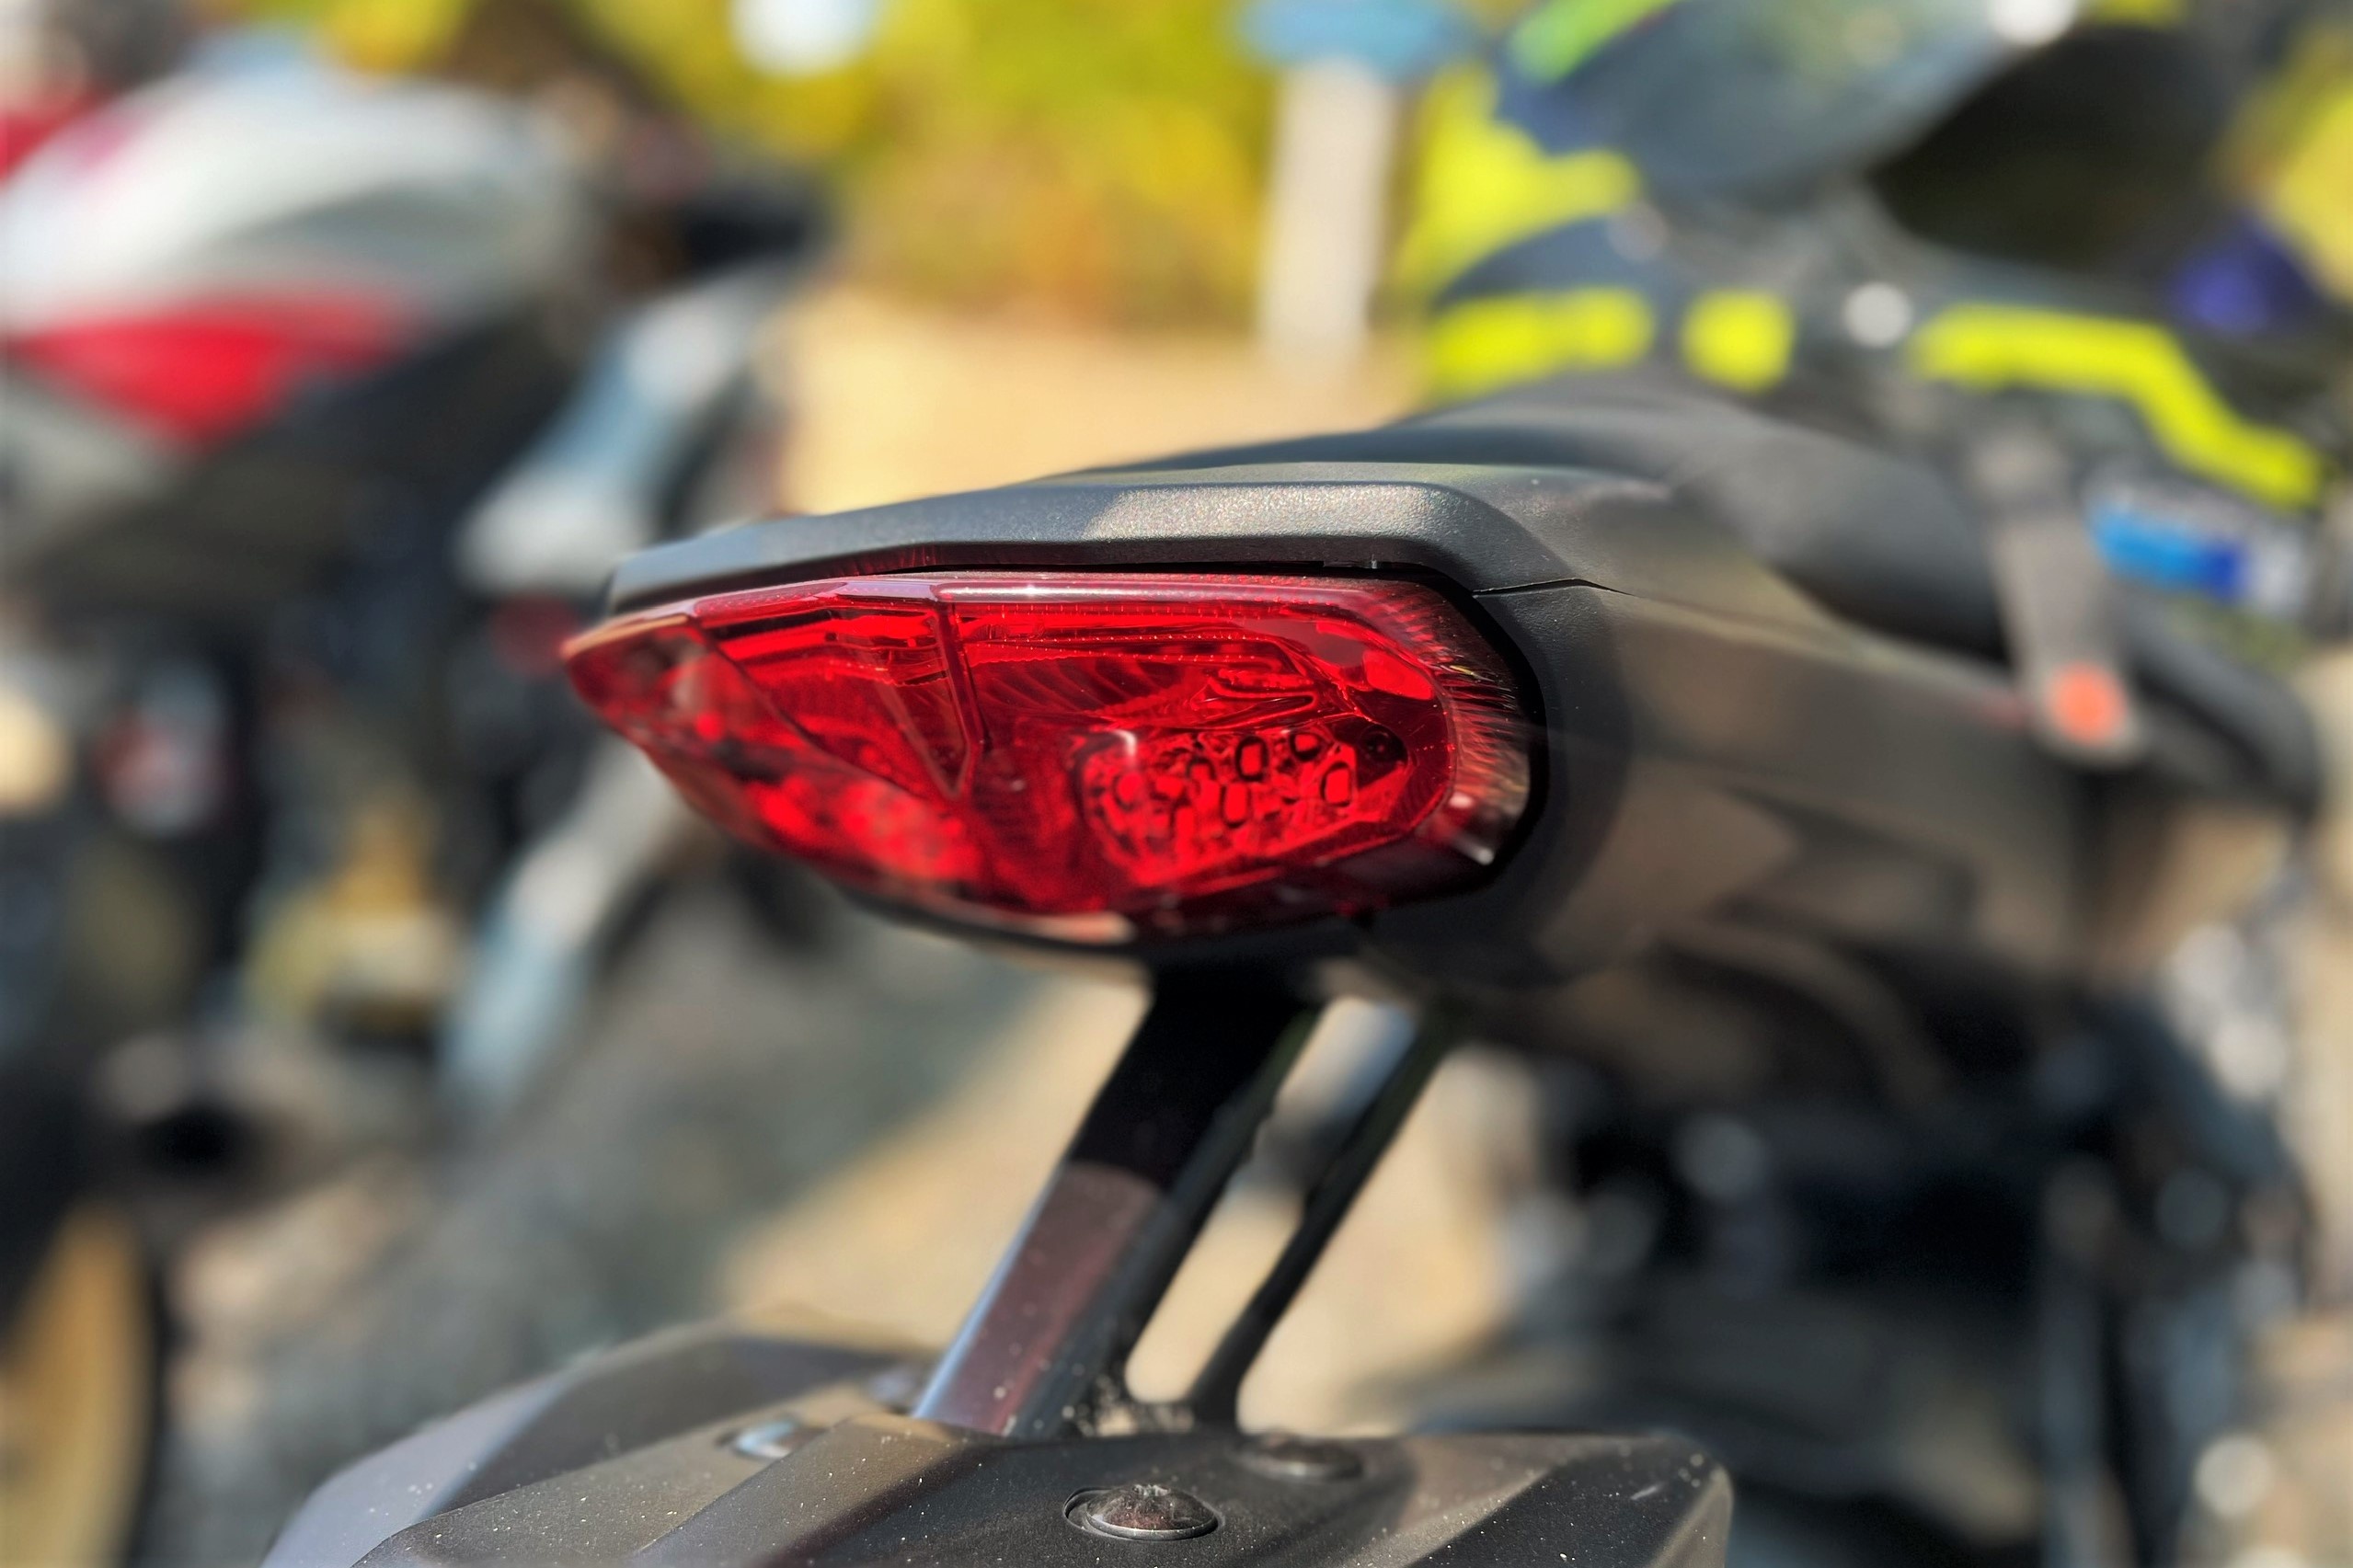 Đánh giá Yamaha MT-10 thế hệ mới - mẫu nakedbike giá nửa tỷ đồng - ảnh 3